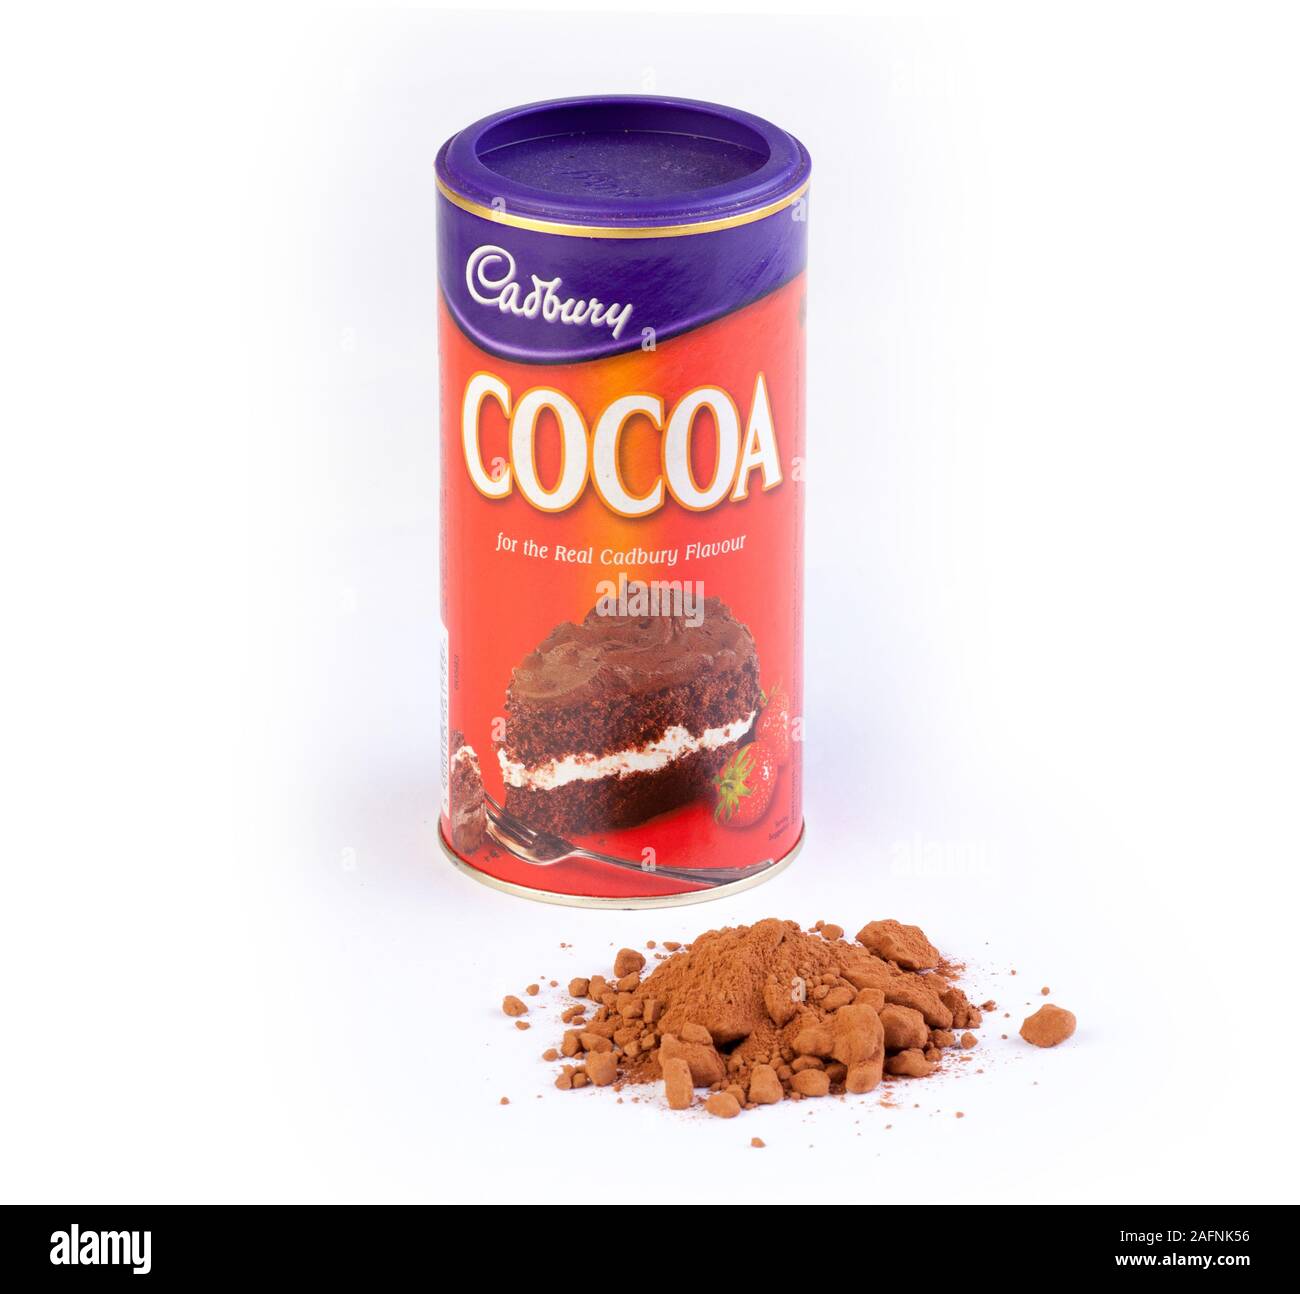 Cadbury cocoa powder Stock Photo